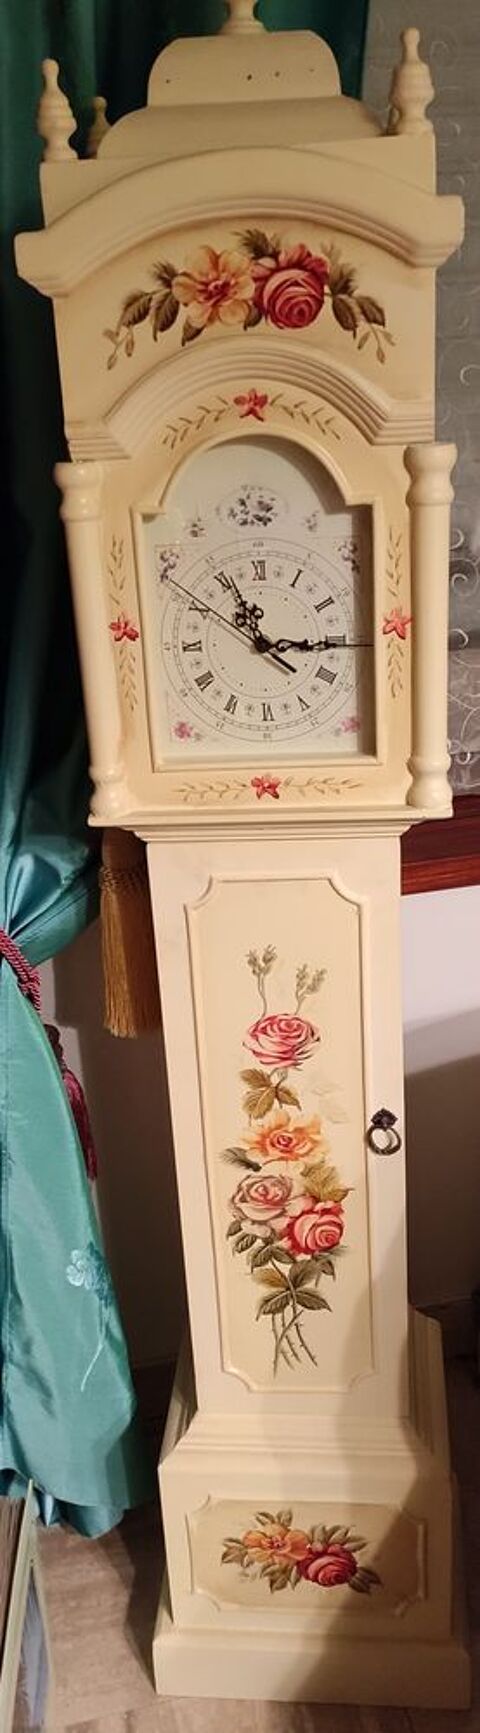 superbe horloge decorative peinture  la main sur bois 90 Saint-tienne (42)